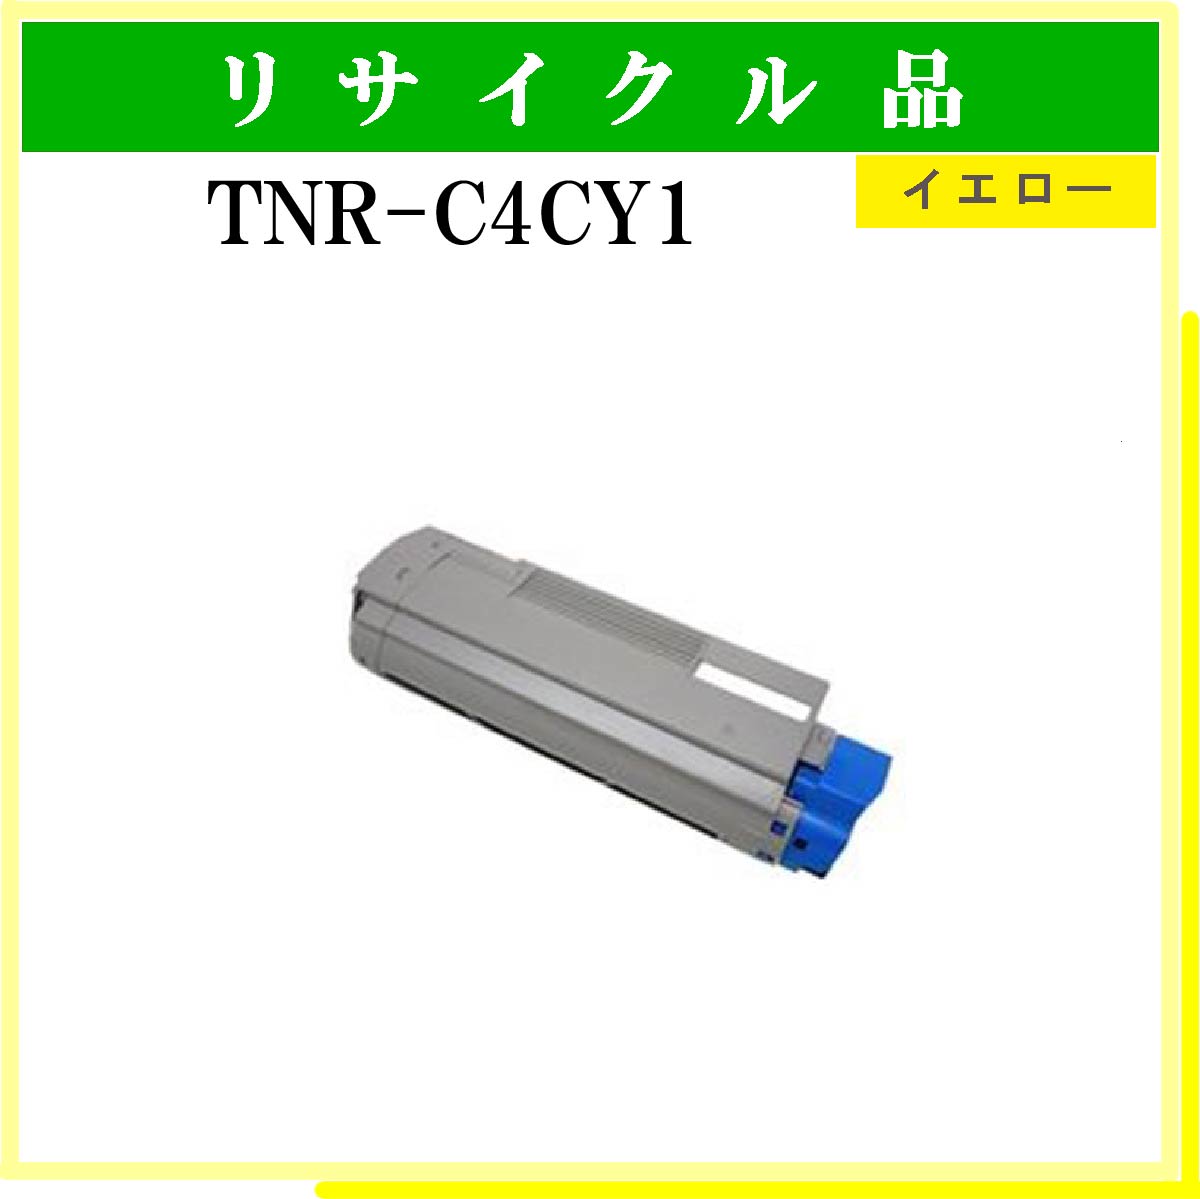 TNR-C4CY1